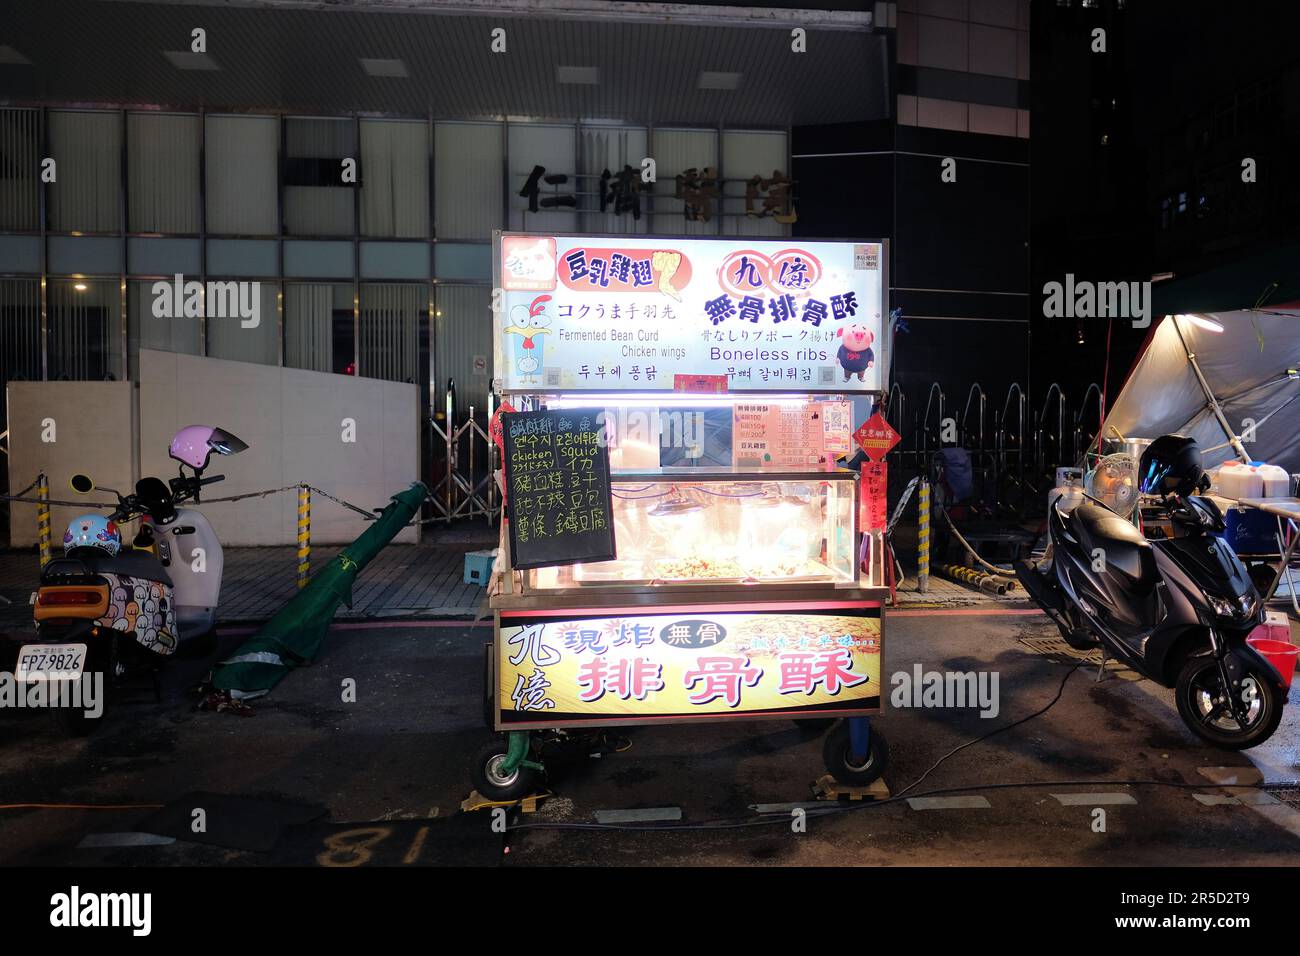 La caillé de haricots fermentés, les ailes de poulet, les calmars et les côtes désossées se tiennent au marché de nuit touristique de Huaxi Street à Taipei, Taïwan; chariot alimentaire local de rue. Banque D'Images